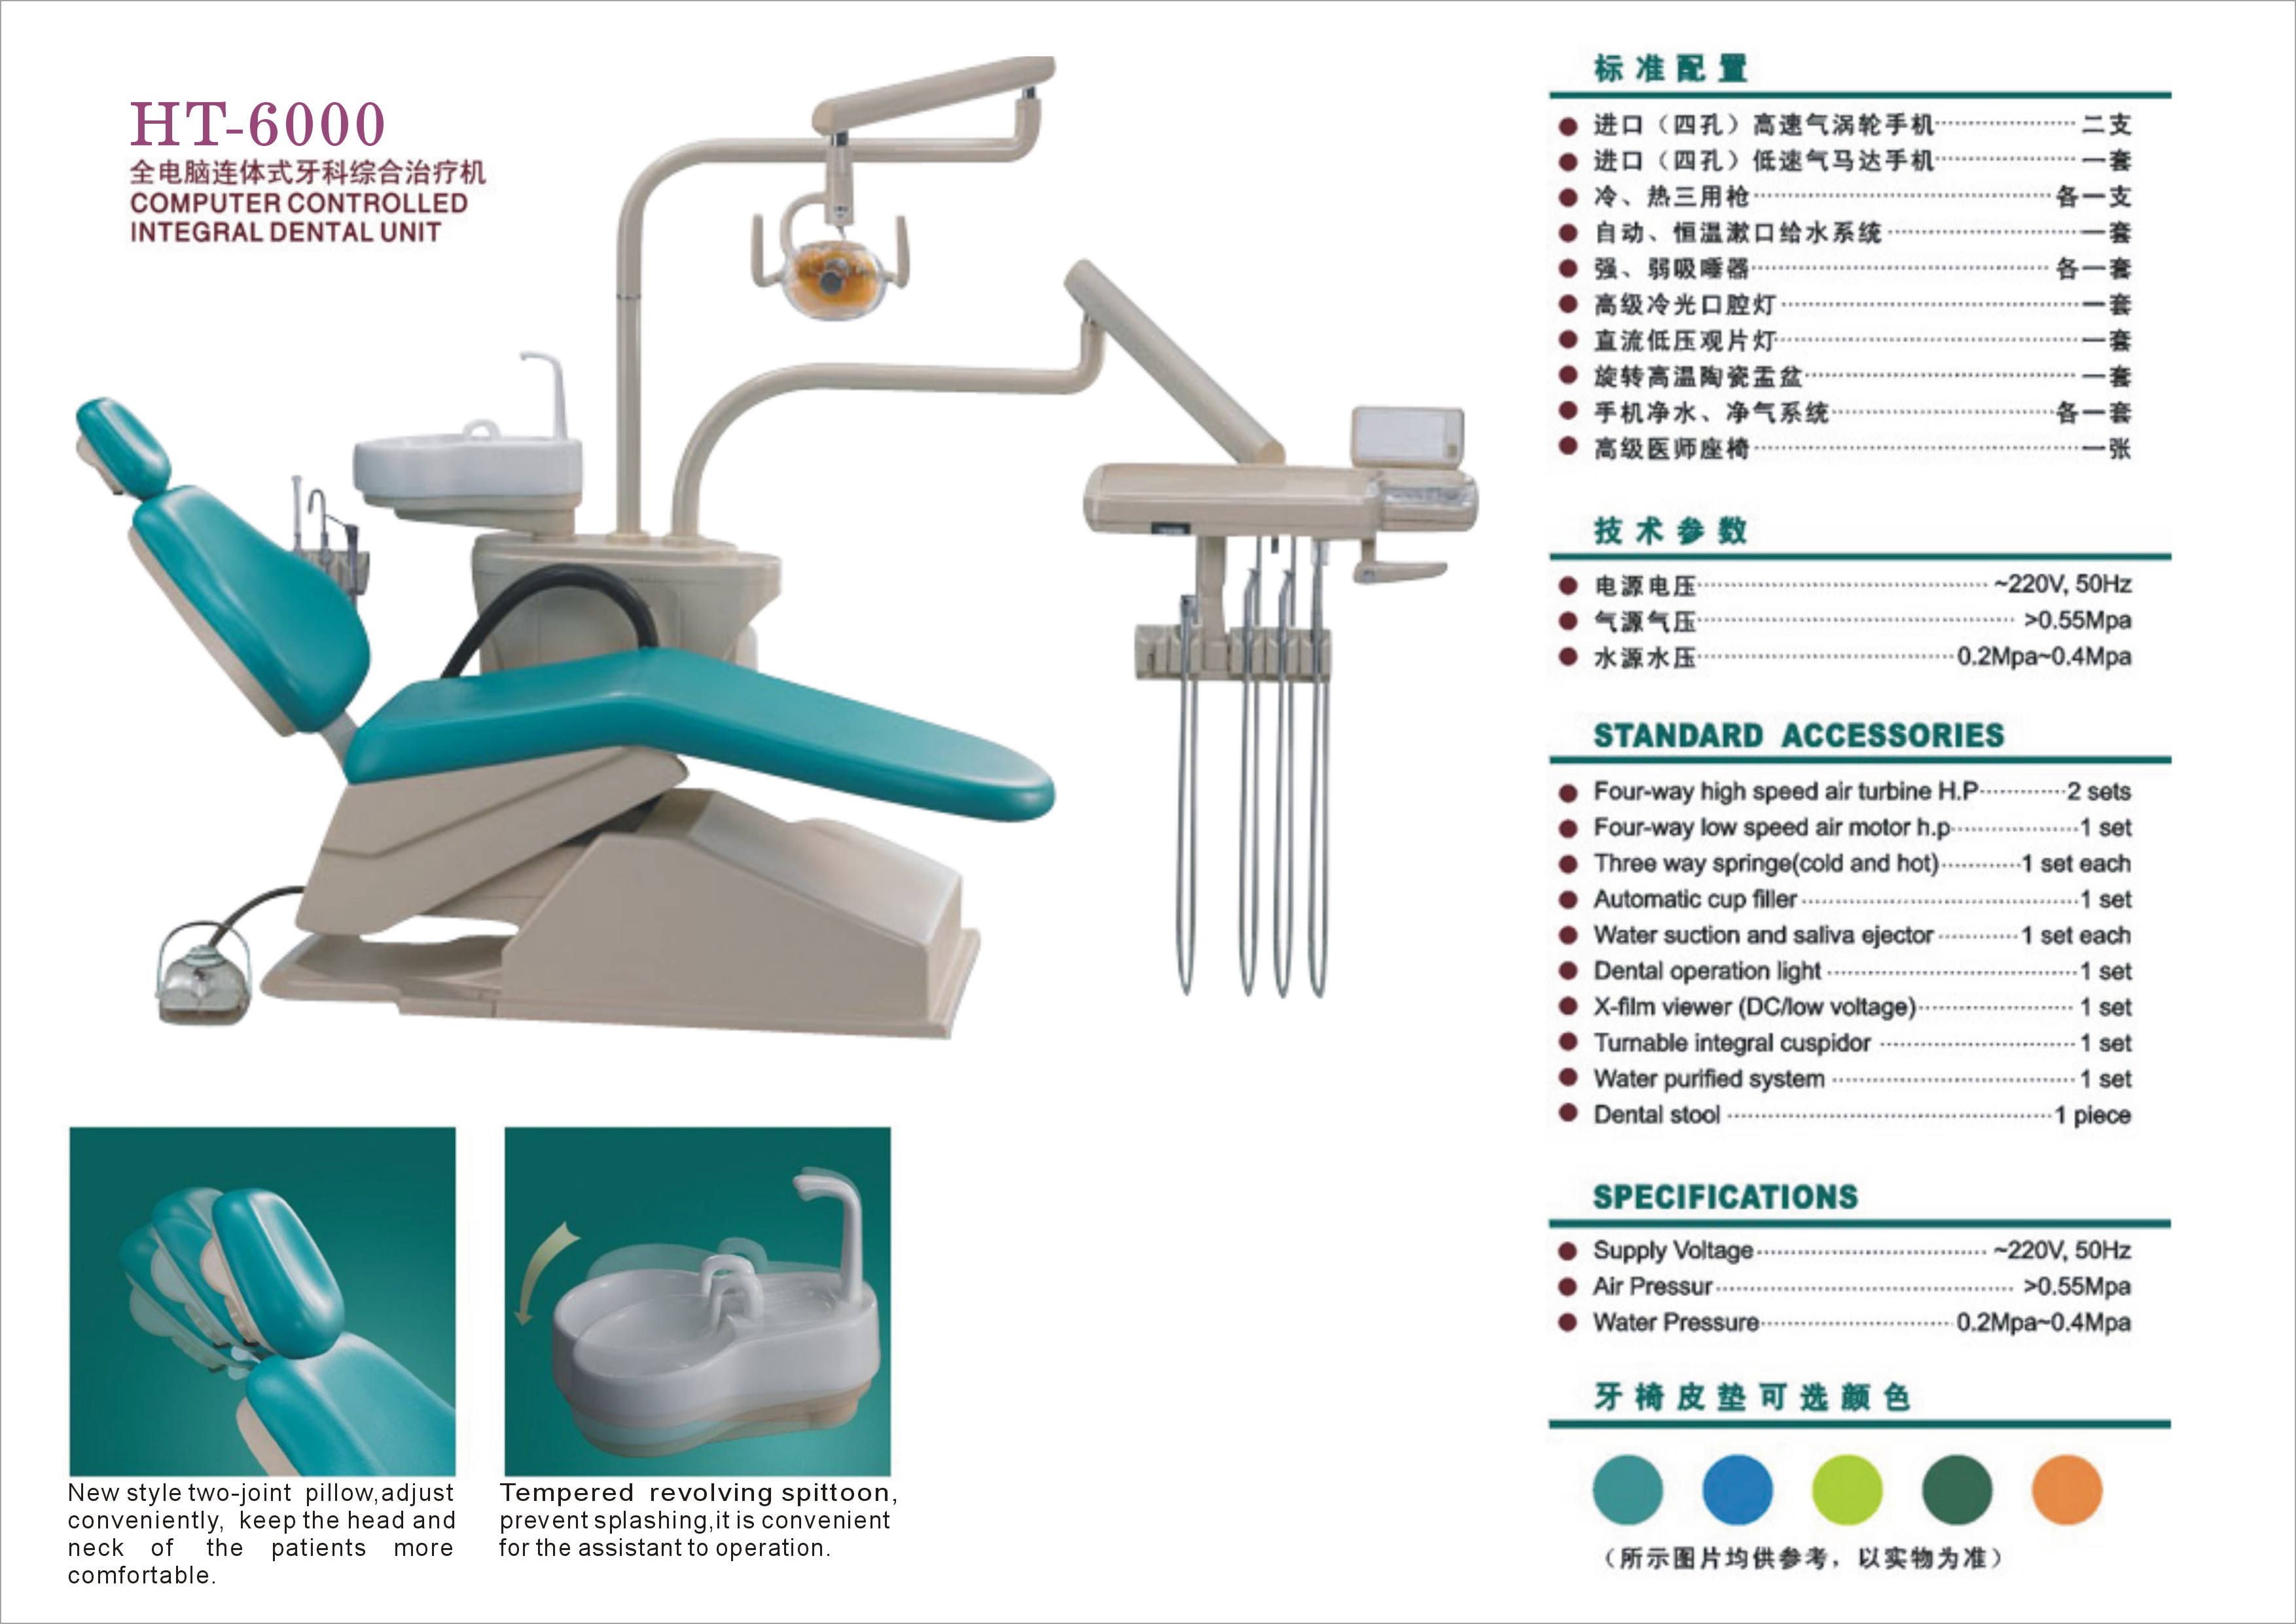 HT-6000 dental chair